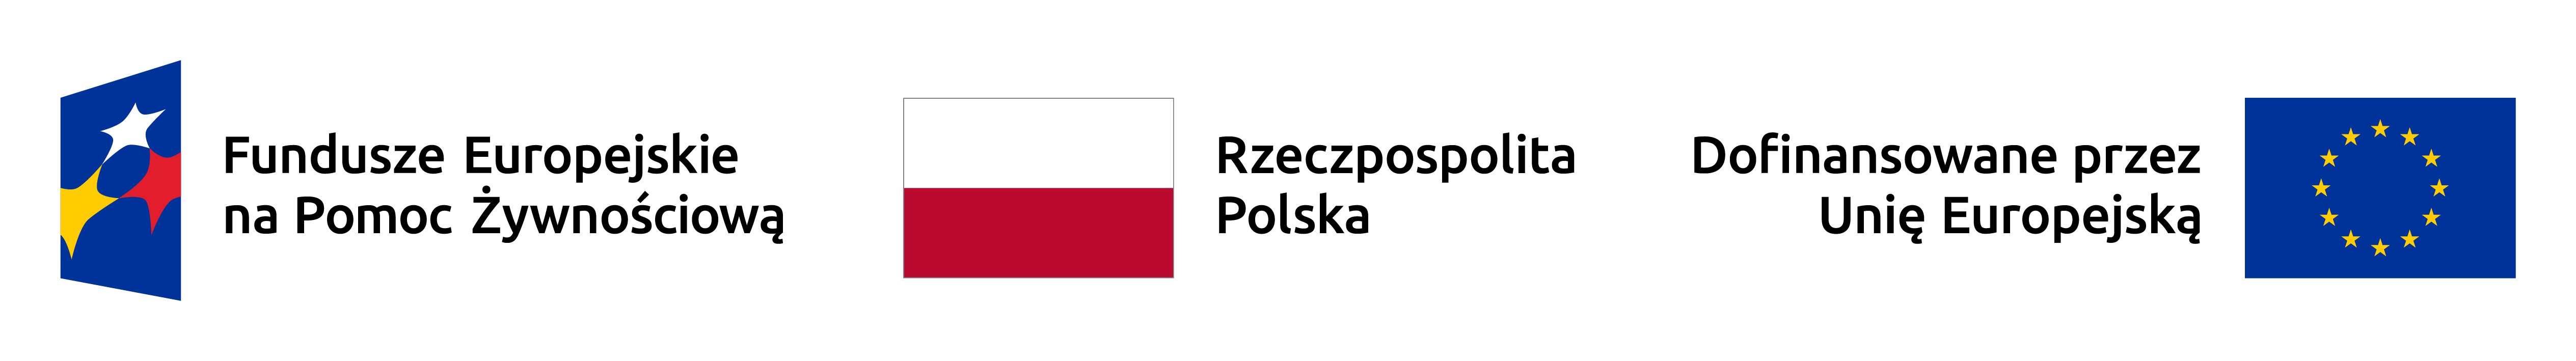 popz 2023 - flagi: Fundusze Europejskie na Pomoc Żywnościową, Flaga Rzeczpospolita Polska oraz Flaga Unii Europejskiej (dofinansowane przez Unię Europejską)